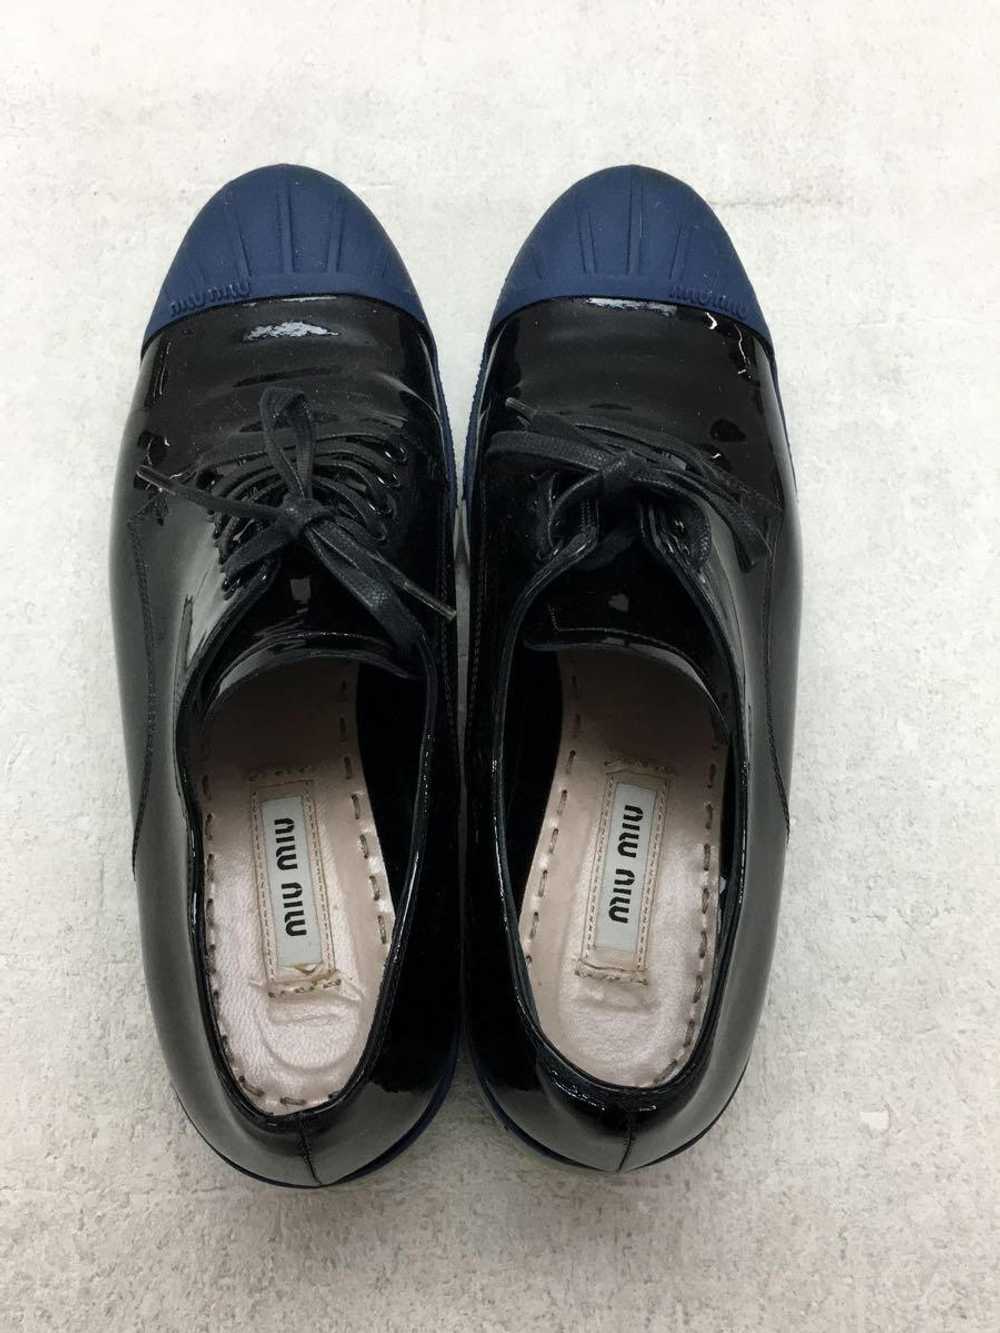 Miu Miu Low Cut Sneakers/36/Blk/5E121A Shoes Bbz23 - image 3